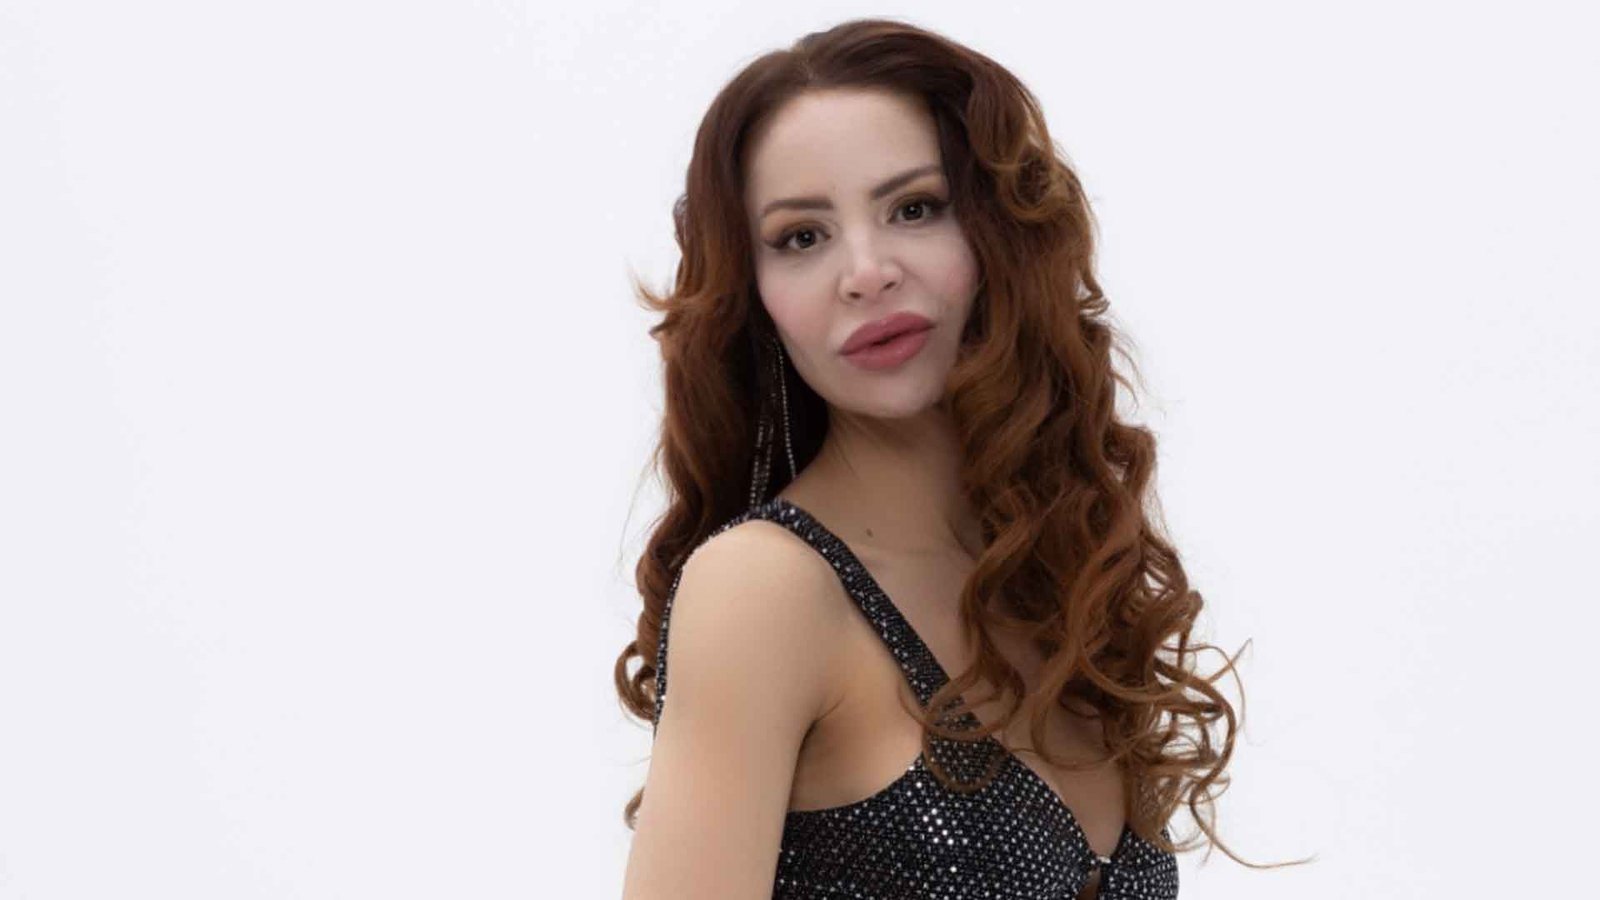 Gül Gökçe Korkmaz, Naif Ses Rengiyle 'heyya' Şarkısıyla Müzik Dünyasında Adından Söz Ettiriyor (5)